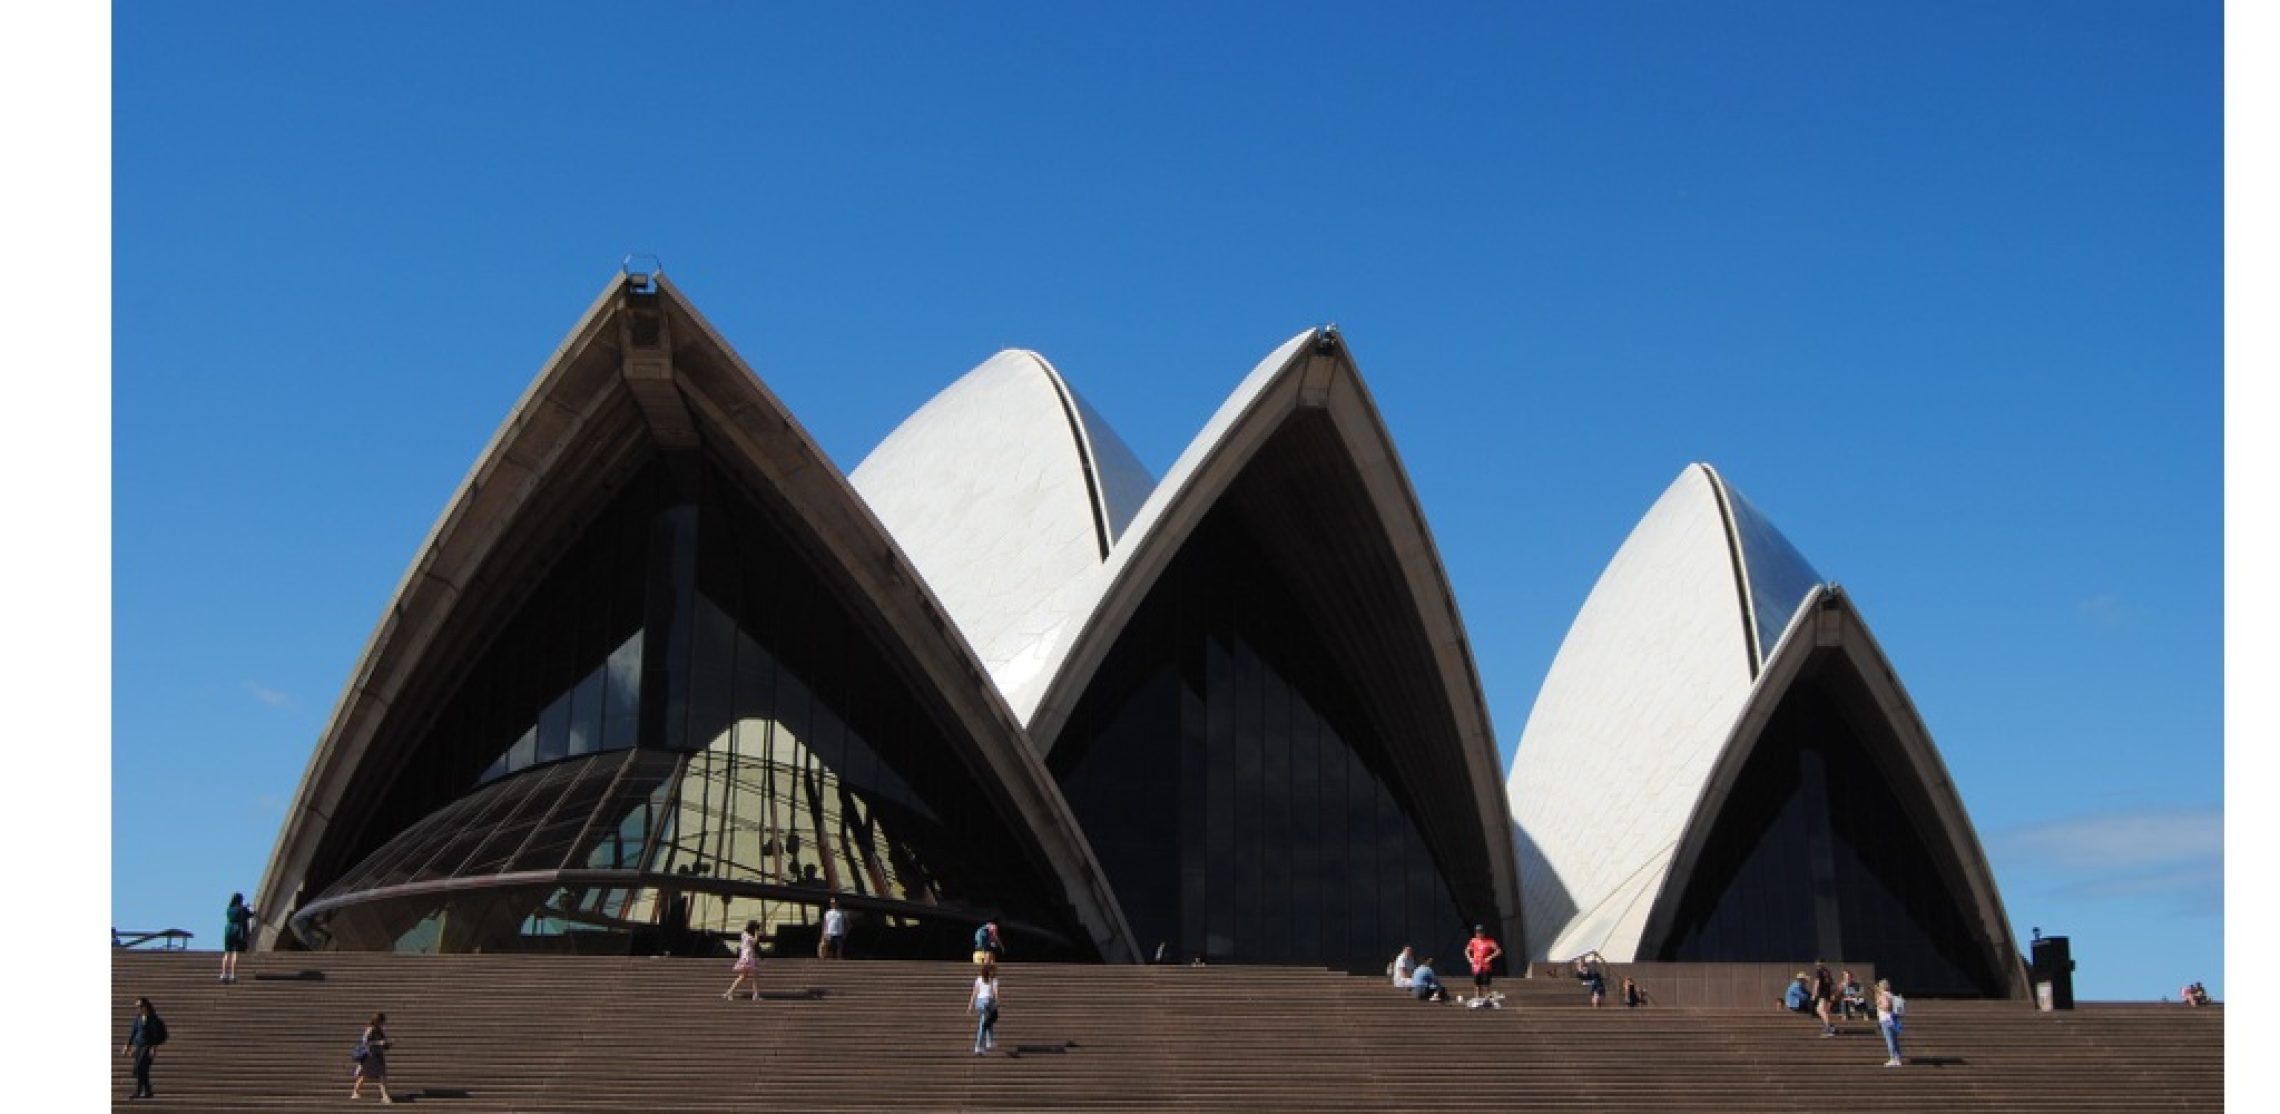 Das sphärische Dach des Opernhaus von Sydney.